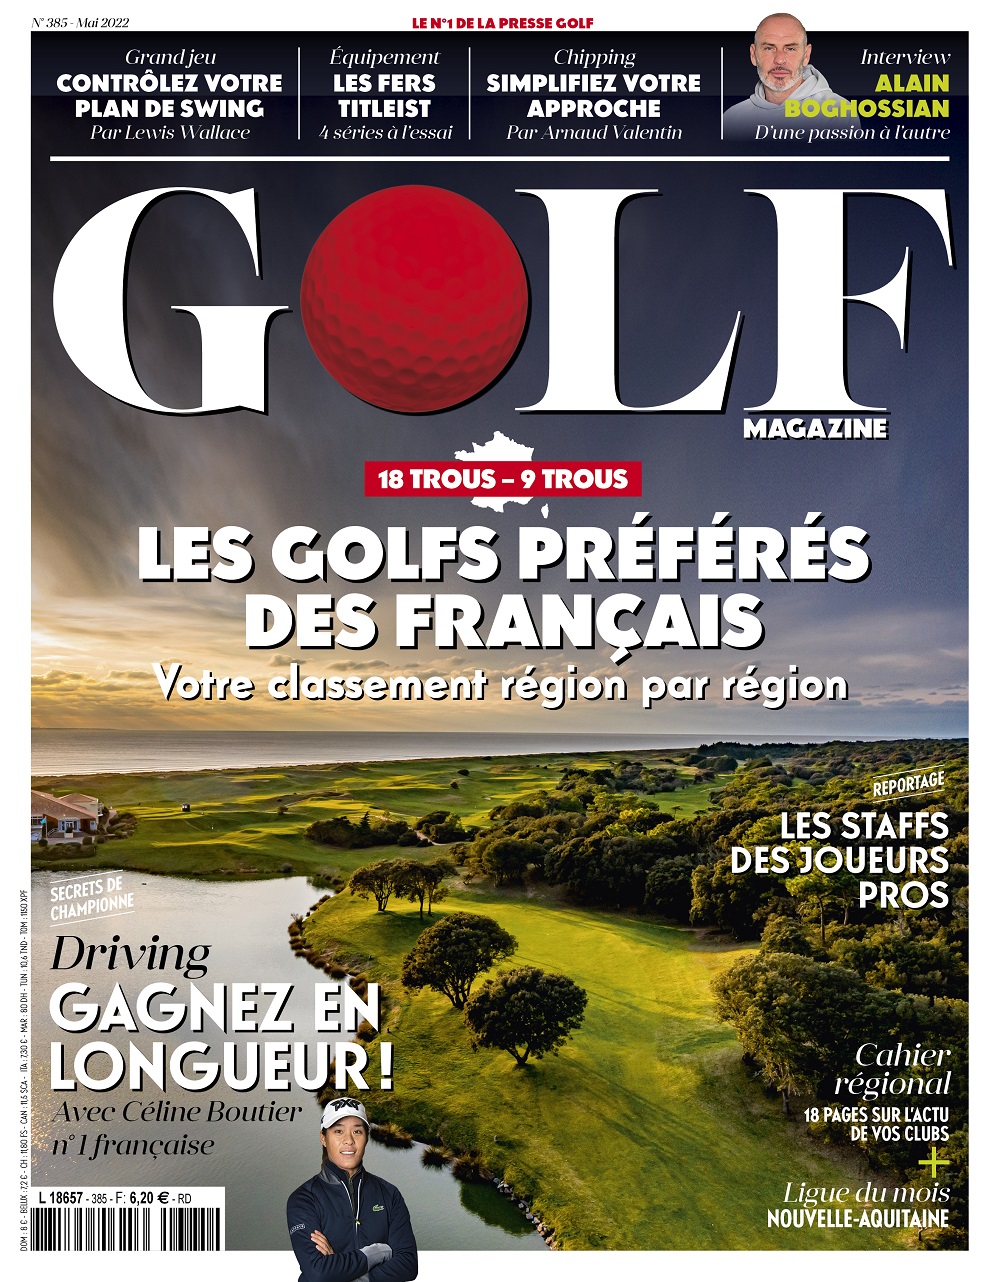 Le Golf Magazine n°385 est en kiosque !